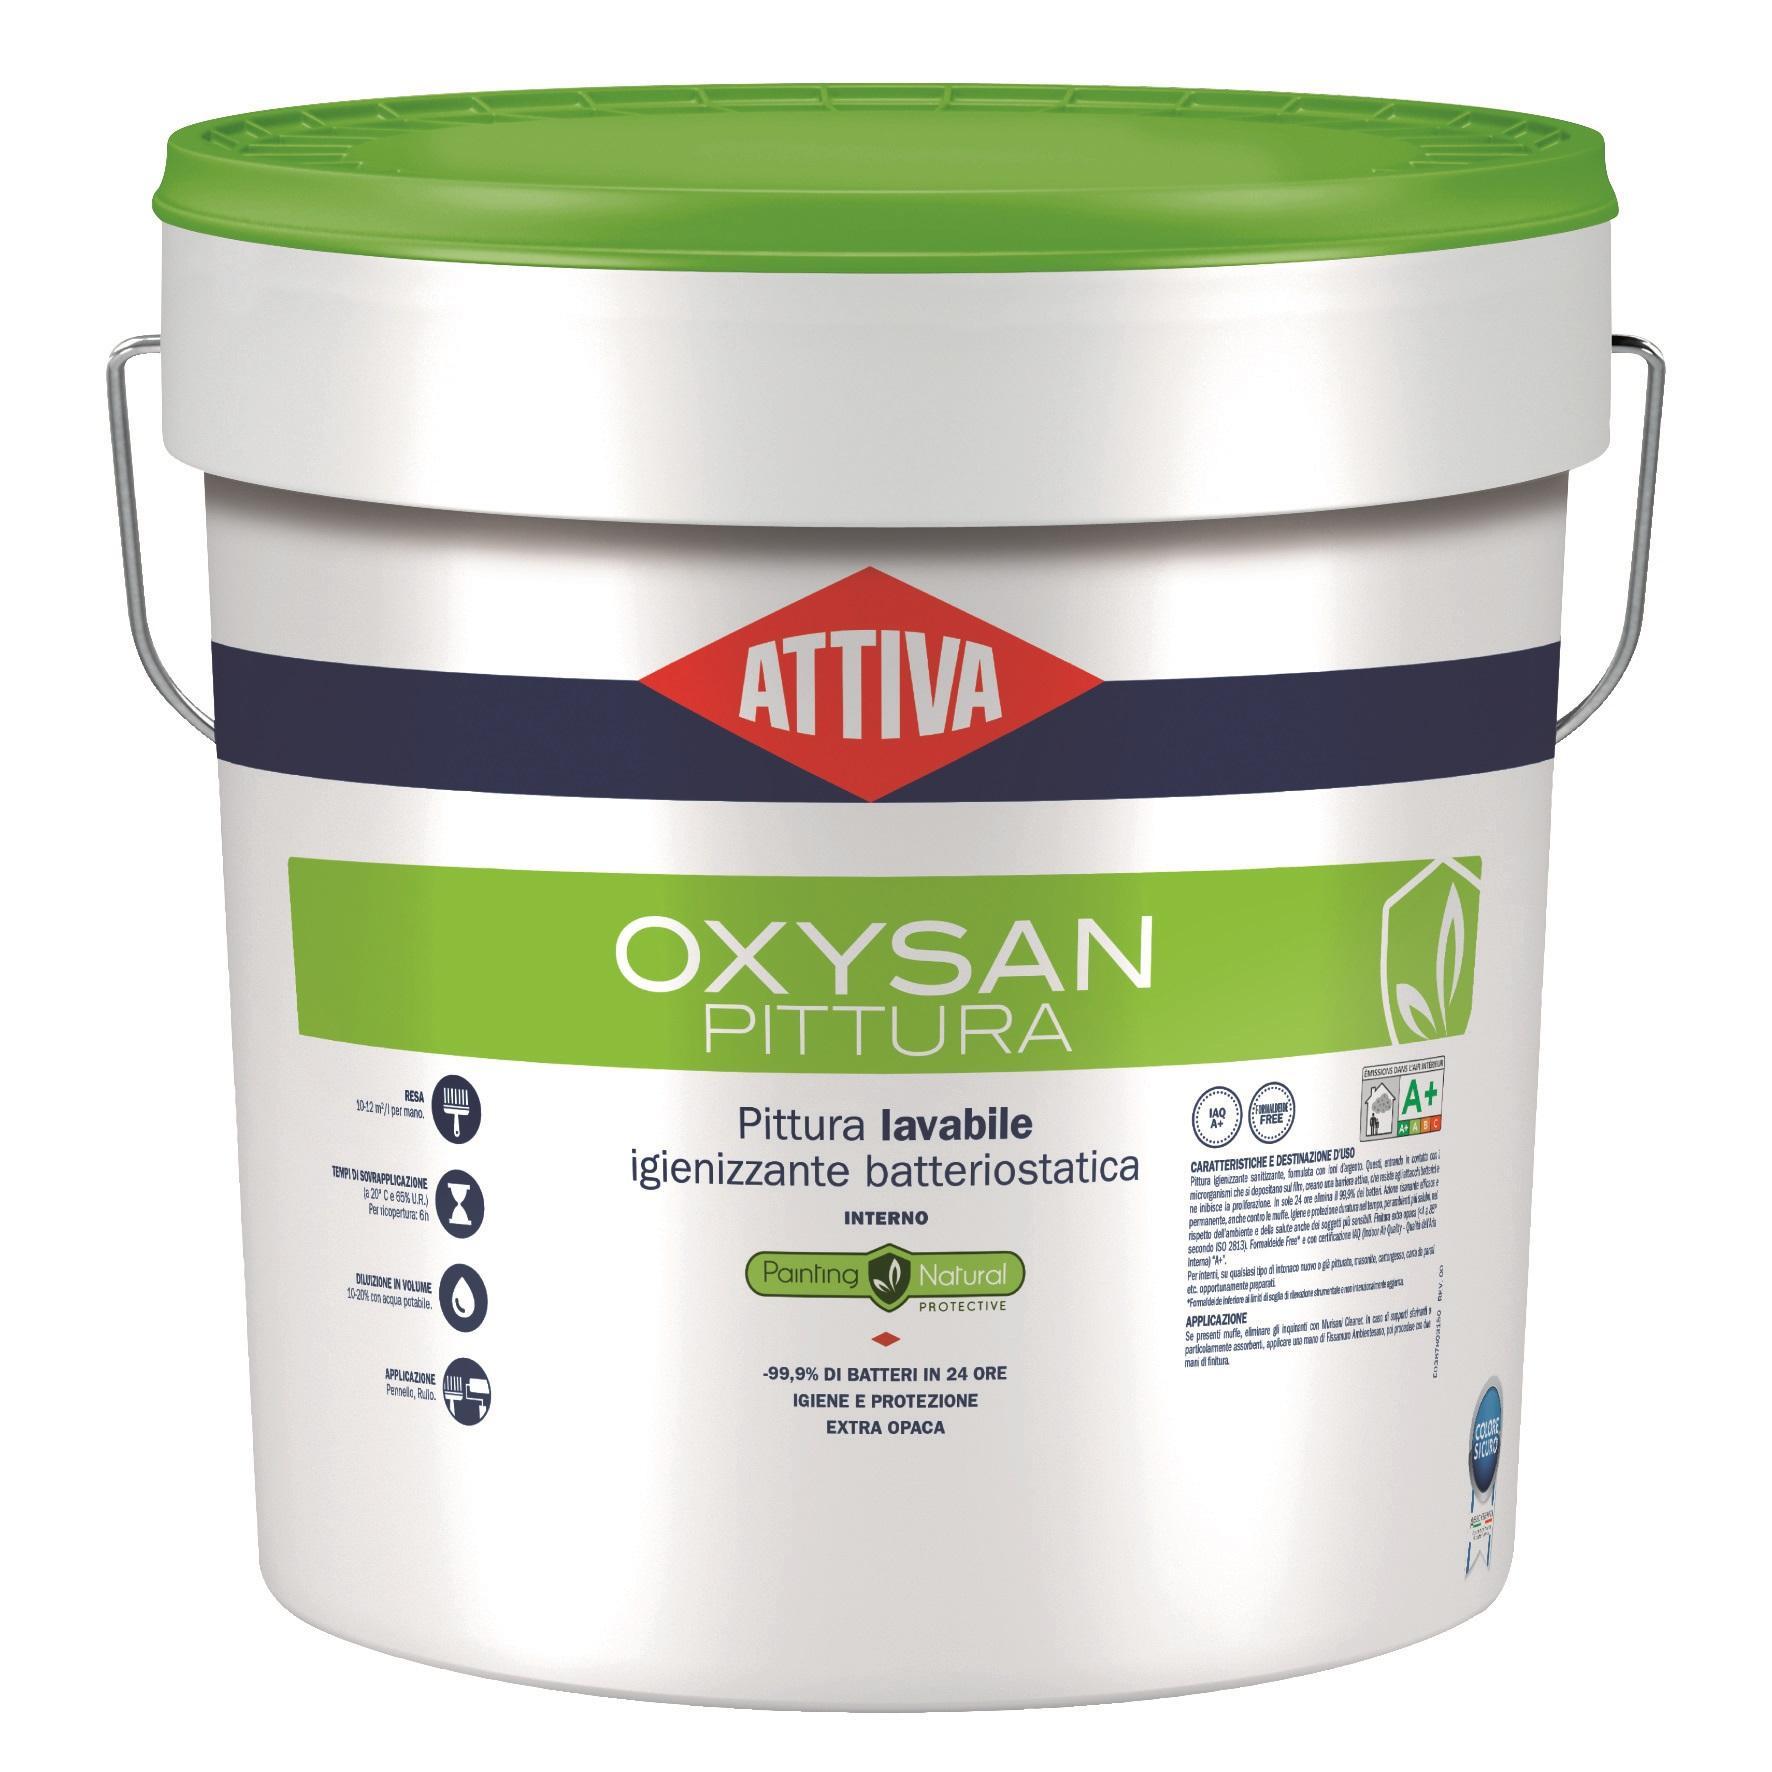 Attiva Oxysan pittura lavabile igienizzante antibatterica latta da 075 lt